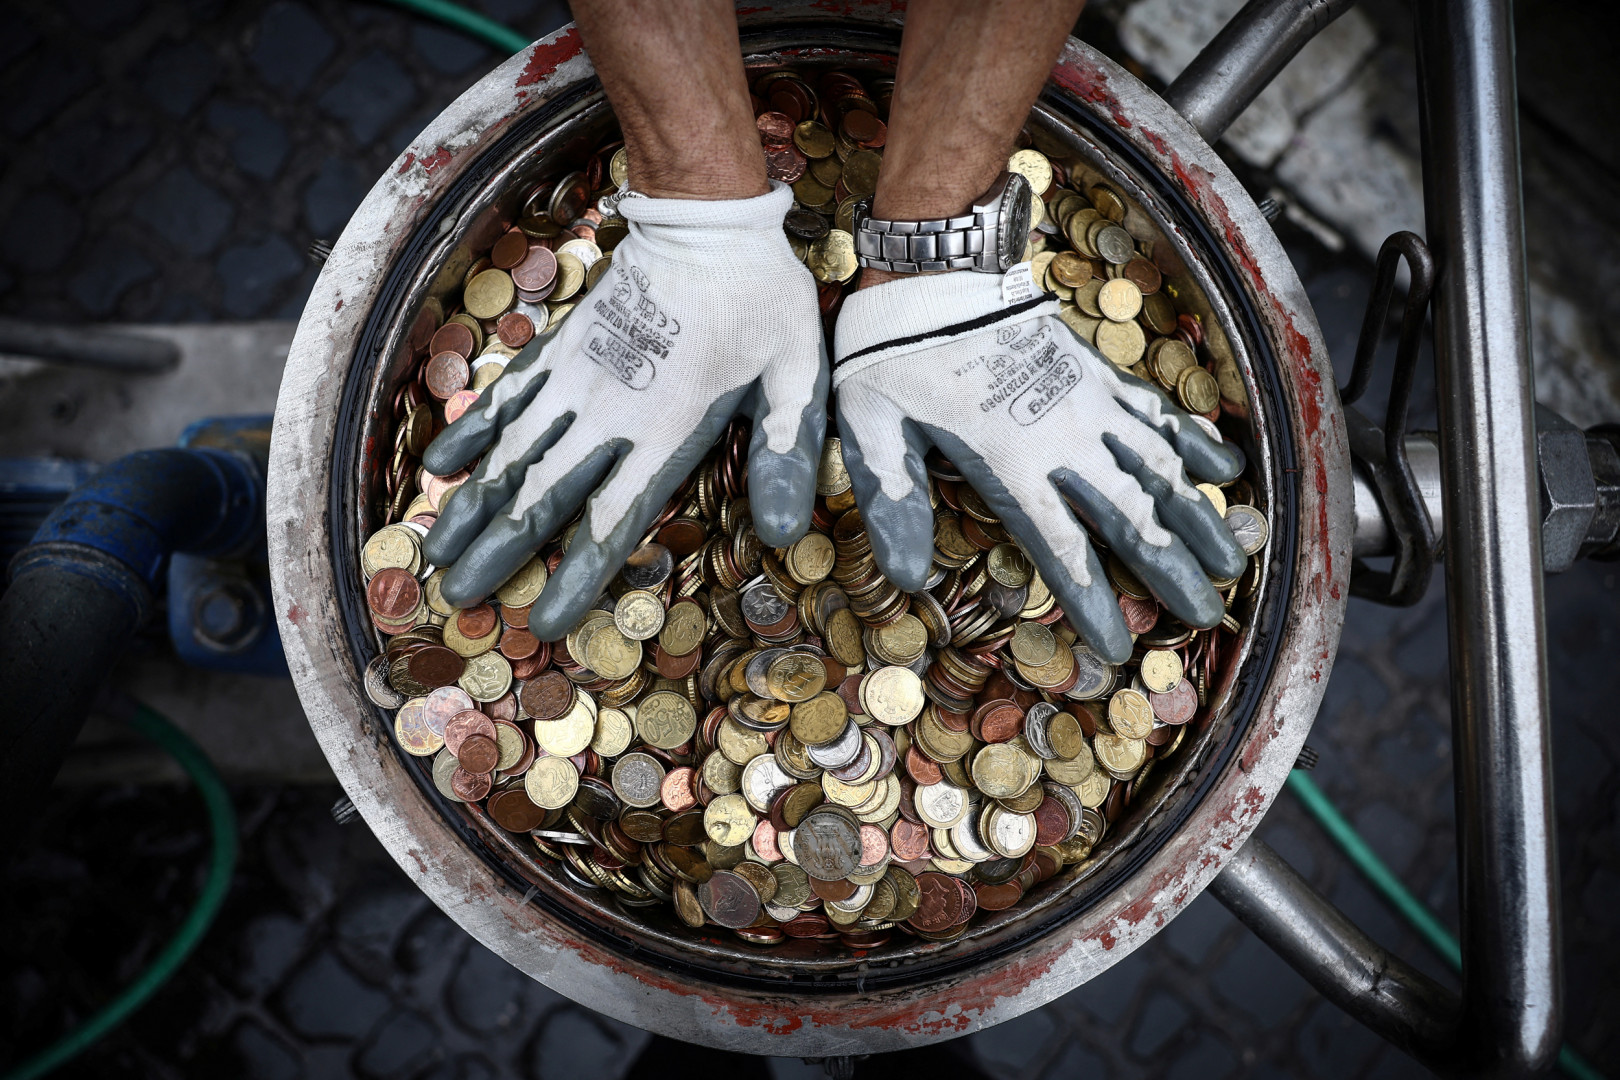 В центре снимка также можно увидеть венгерскую монету номиналом два форинта. Фото: Гульельмо Манджапане / Reuters.